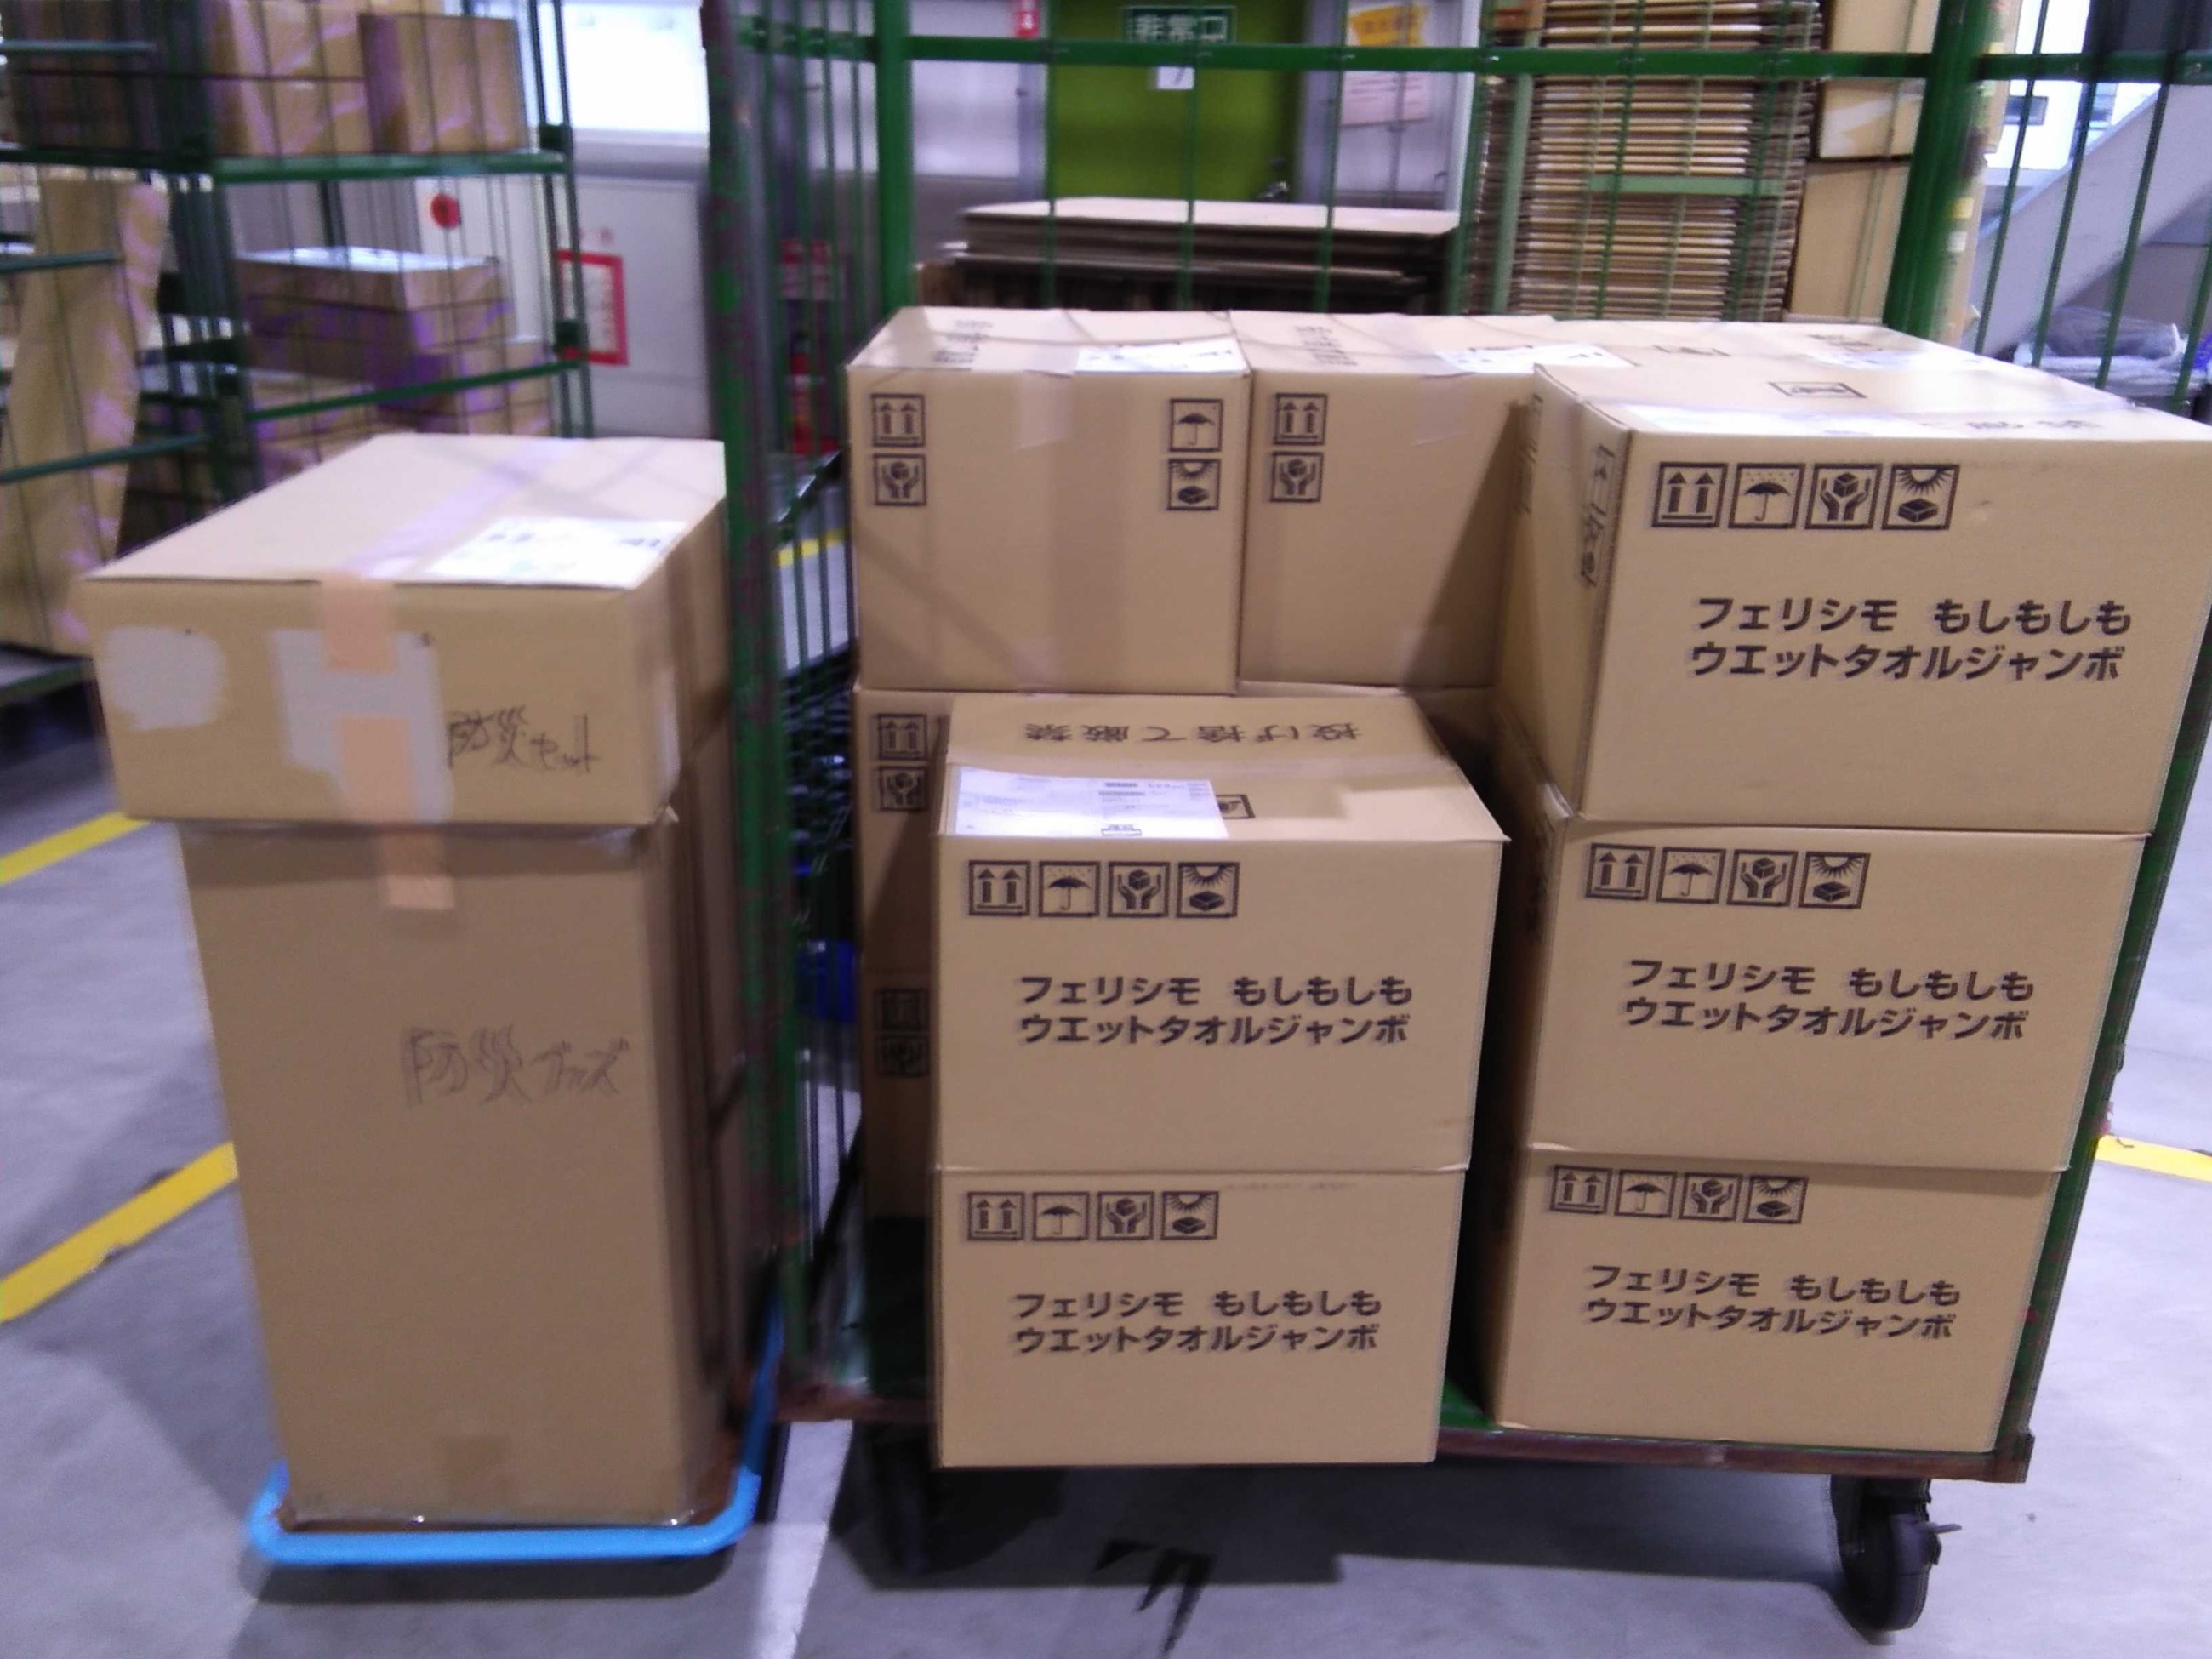 フェリシモ提供のボディタオルなどが入った箱が積み上げられています。